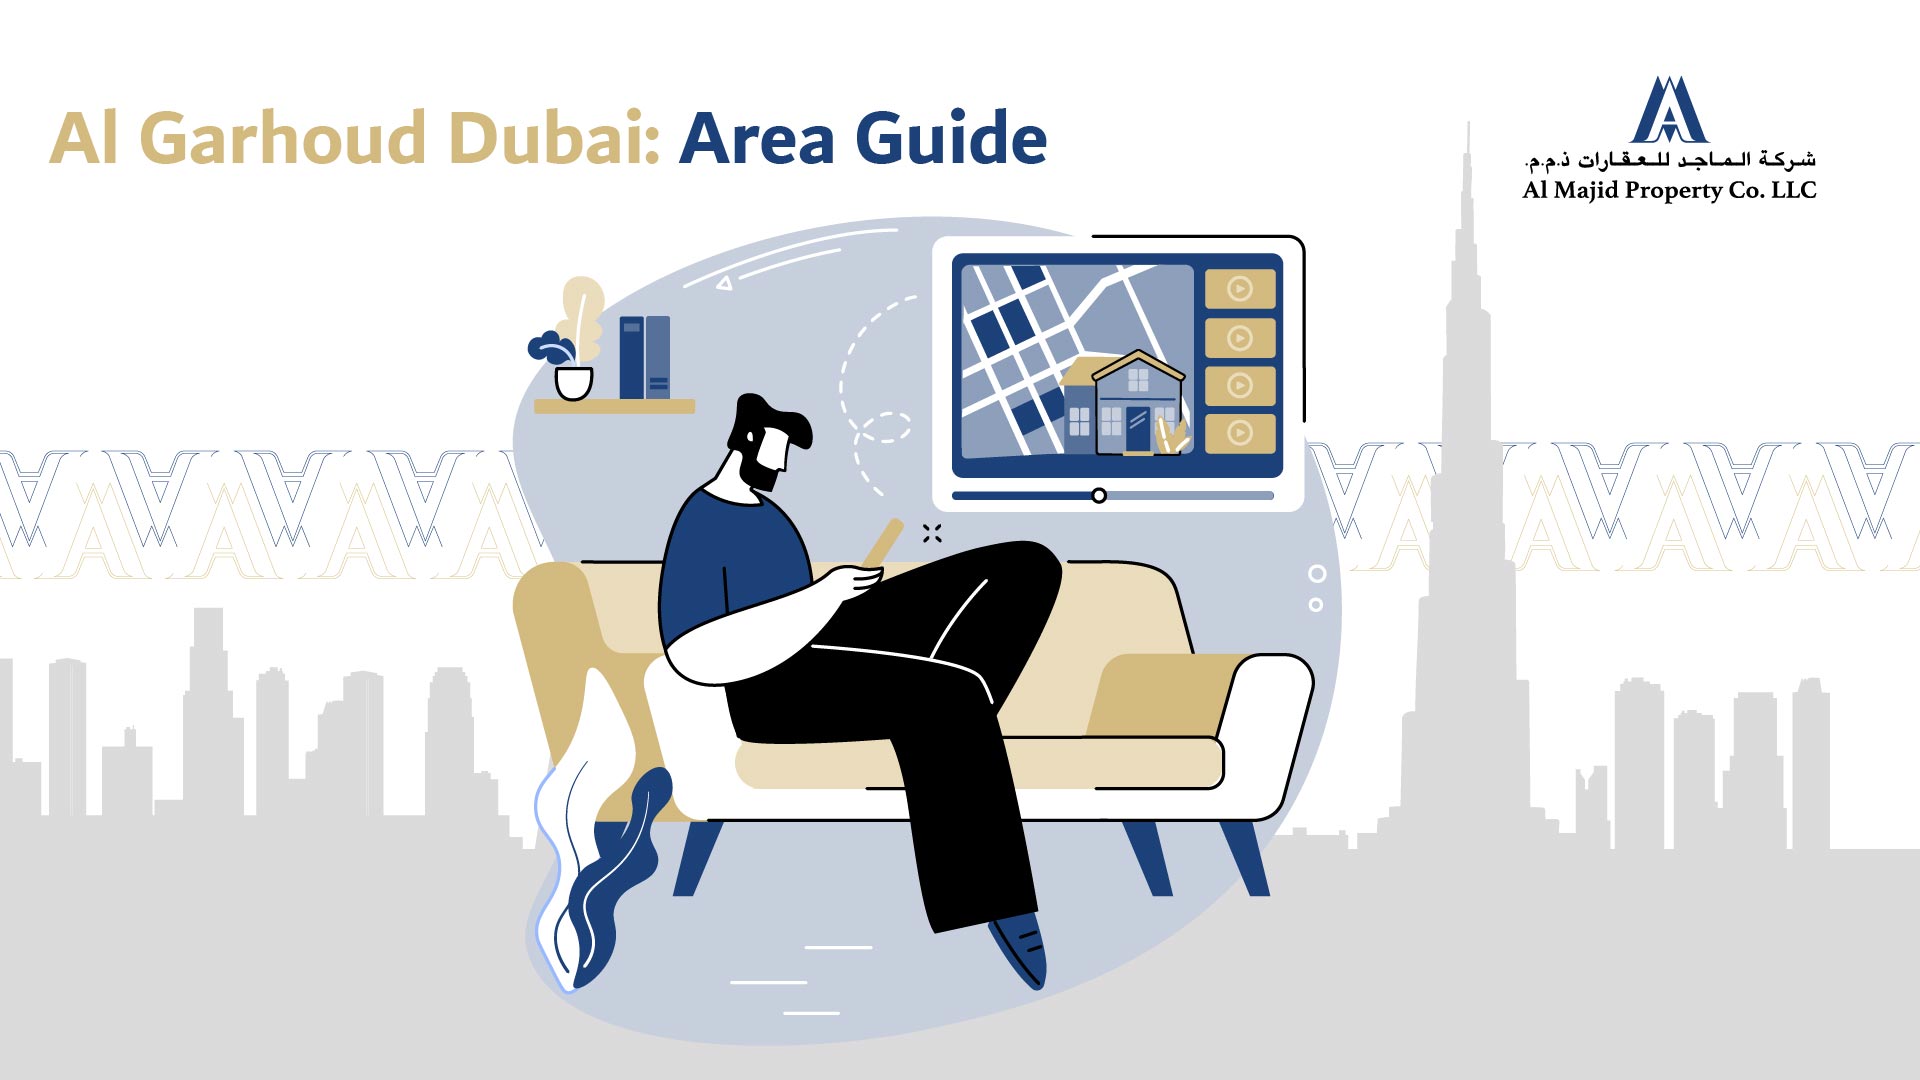 Al Garhoud Dubai: Area Guide